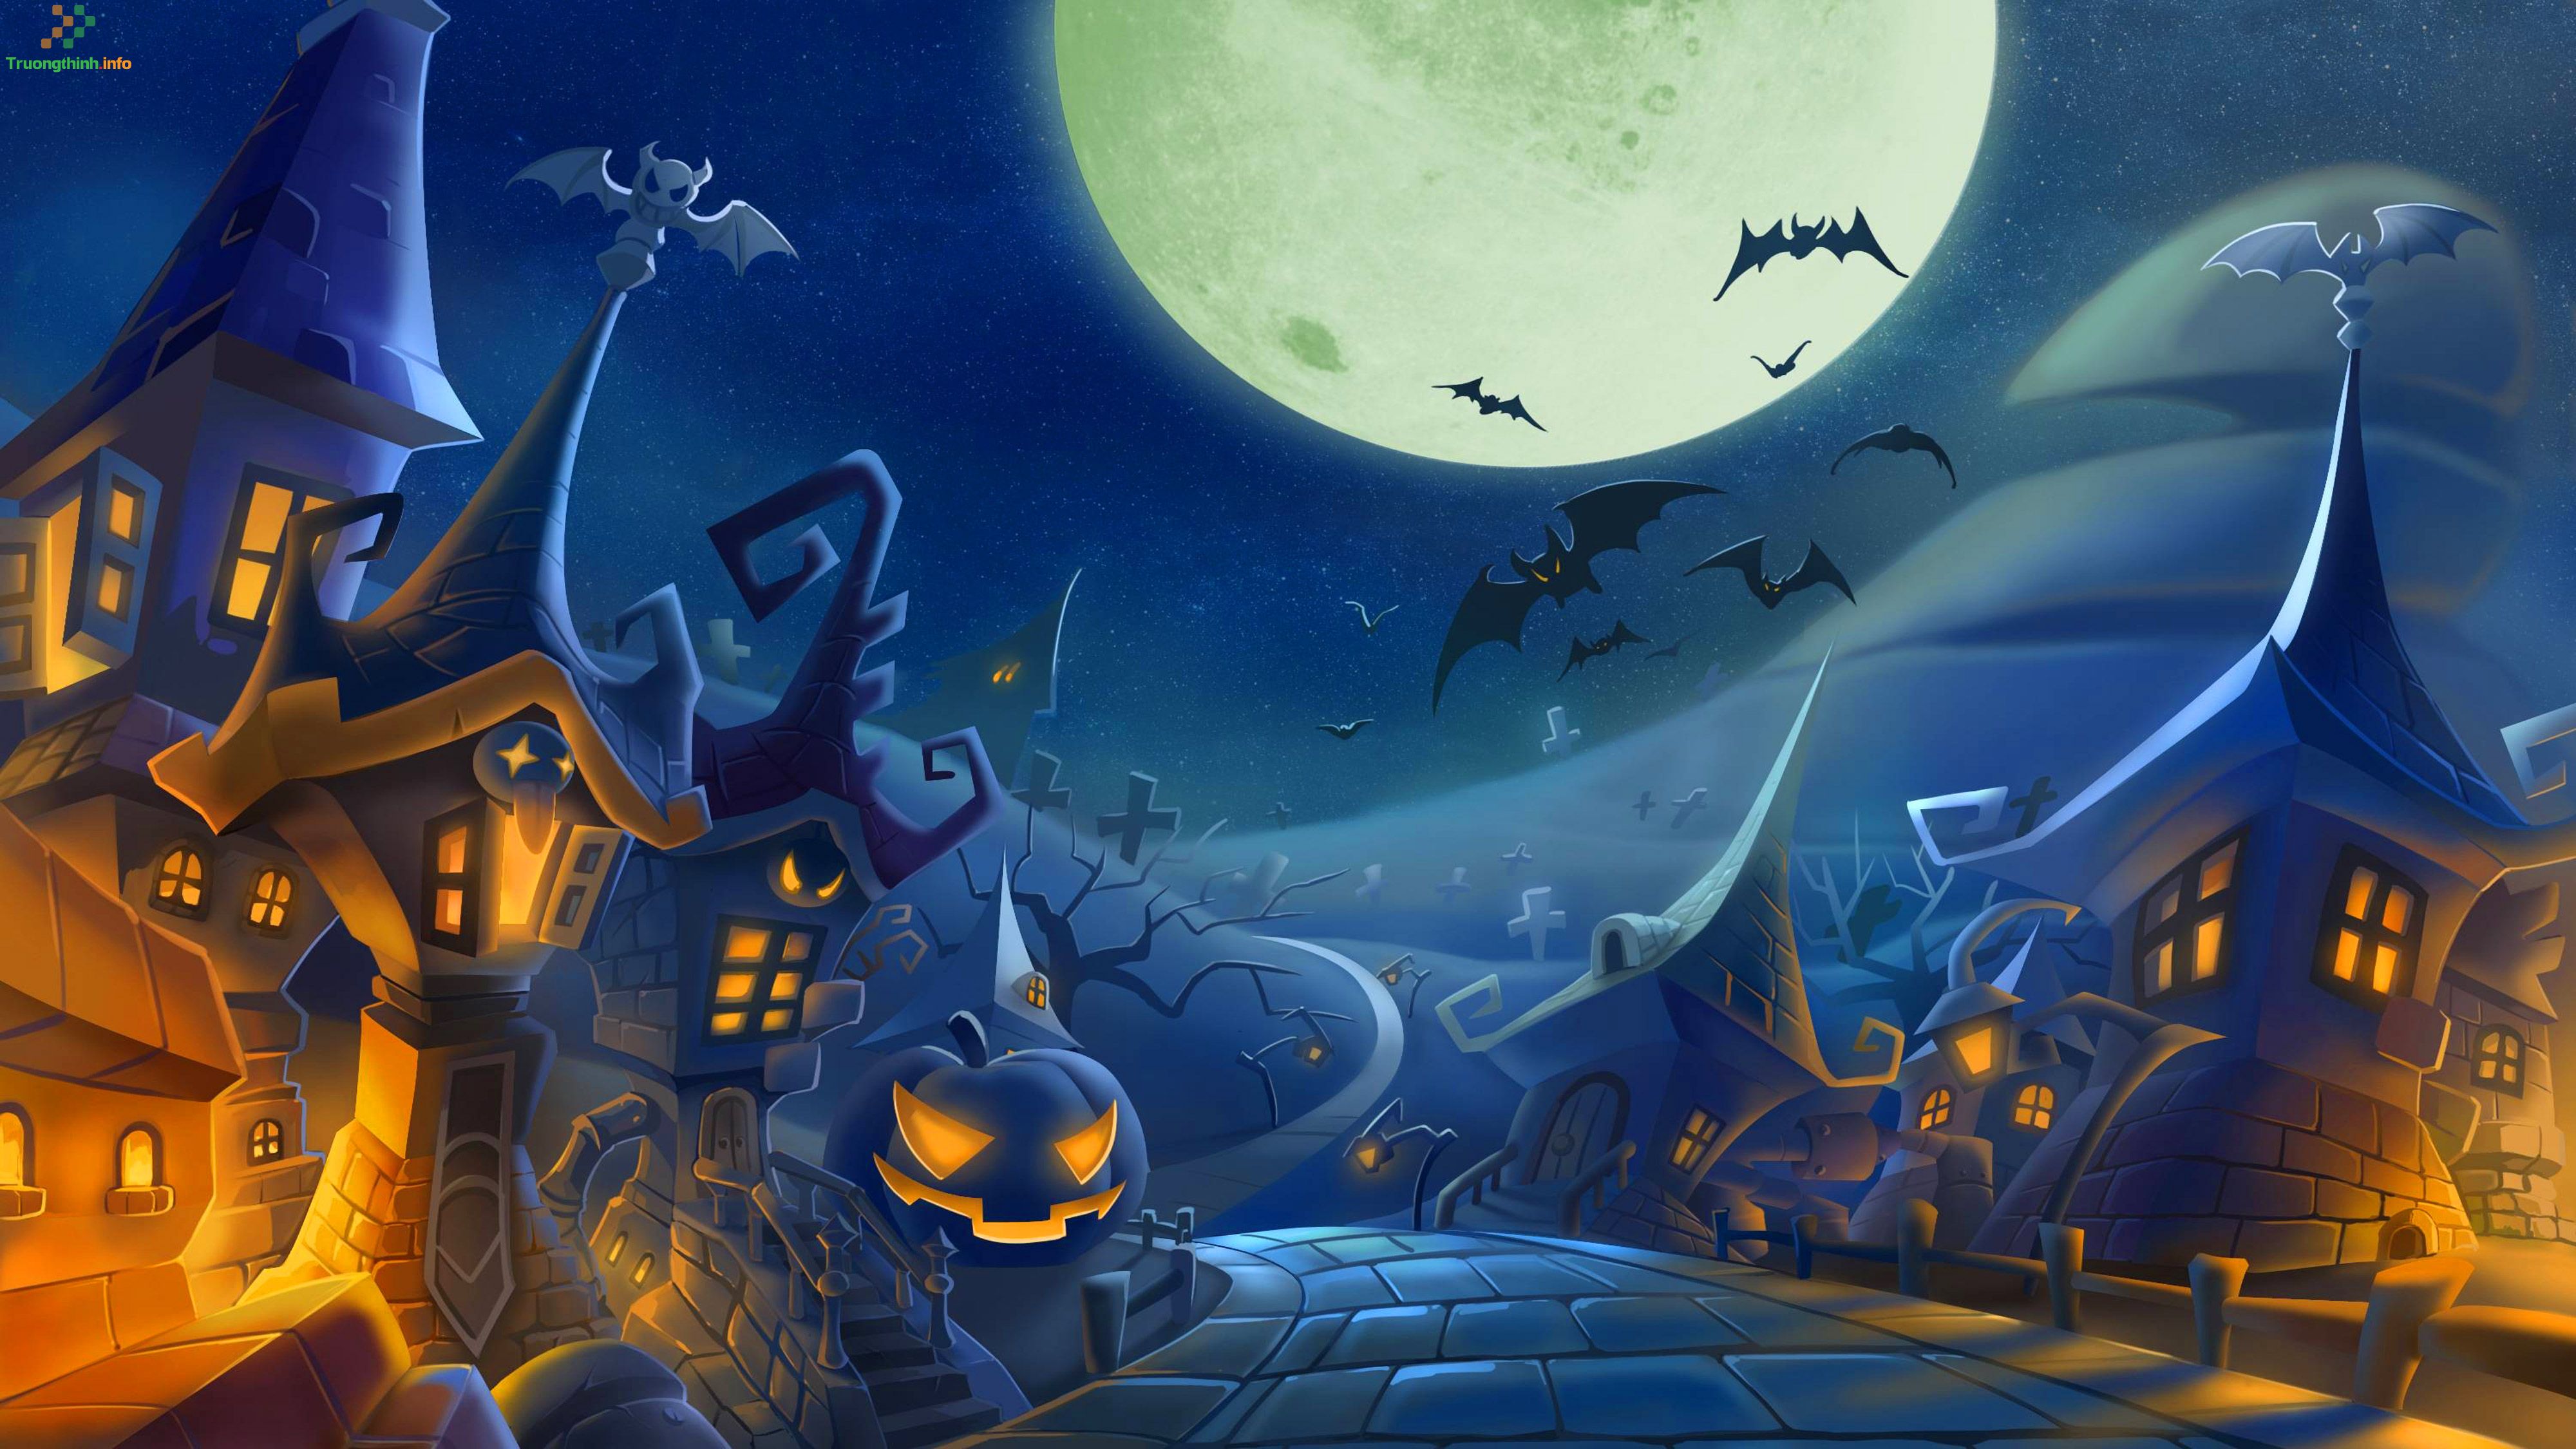 Halloween: Thoải mái thể hiện sự sáng tạo của bạn và tham gia vào lễ hội Halloween đầy màu sắc. Chỉ cần một chút tưởng tượng và những chiếc búp bê ma quái, bạn sẽ tạo được không gian đích thực cho một đêm Halloween thú vị. Xem hình ảnh liên quan để trang trí cho lễ hội của bạn.